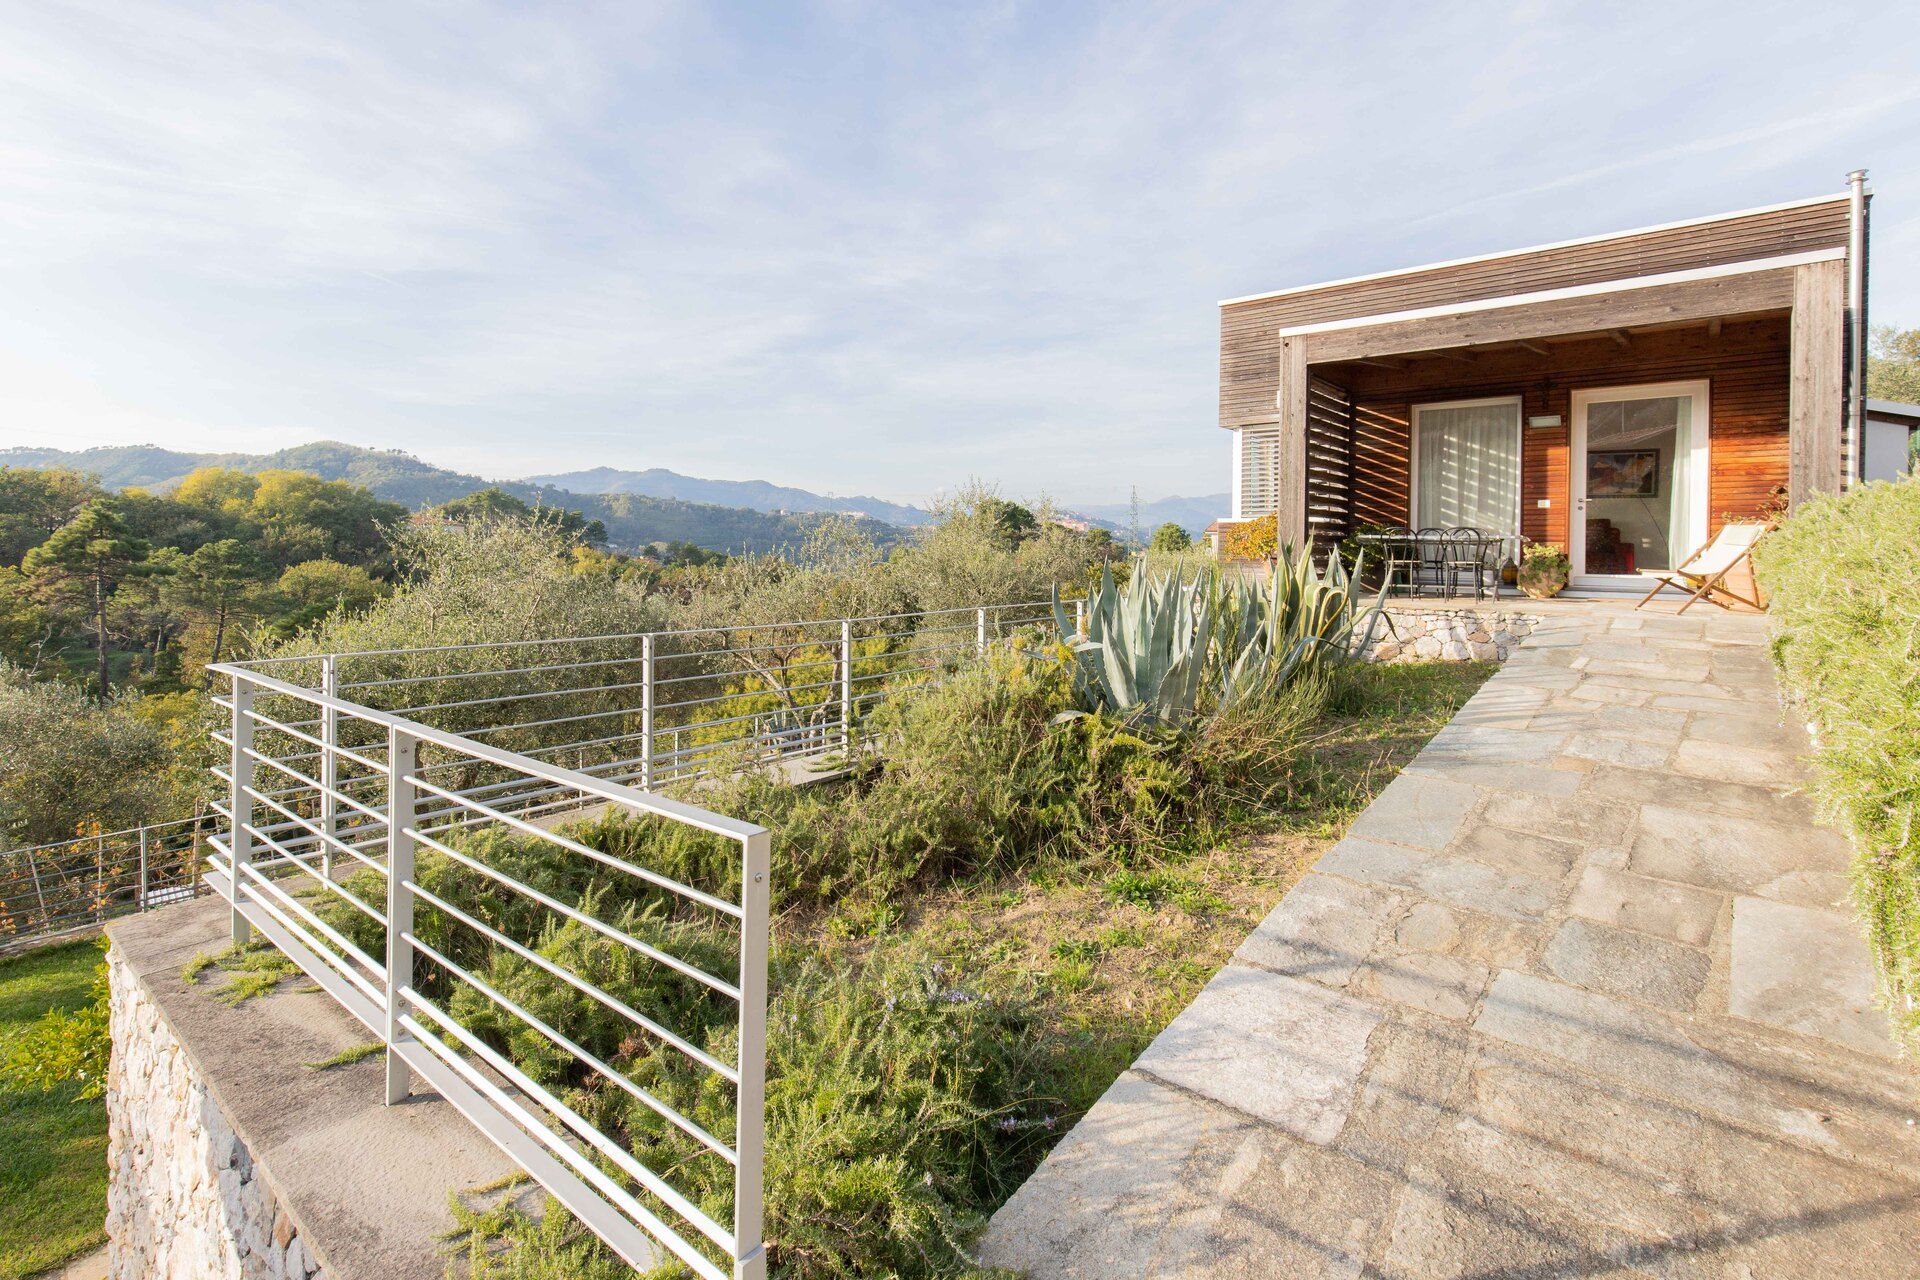 A vendre villa in zone tranquille Vezzano Ligure Liguria